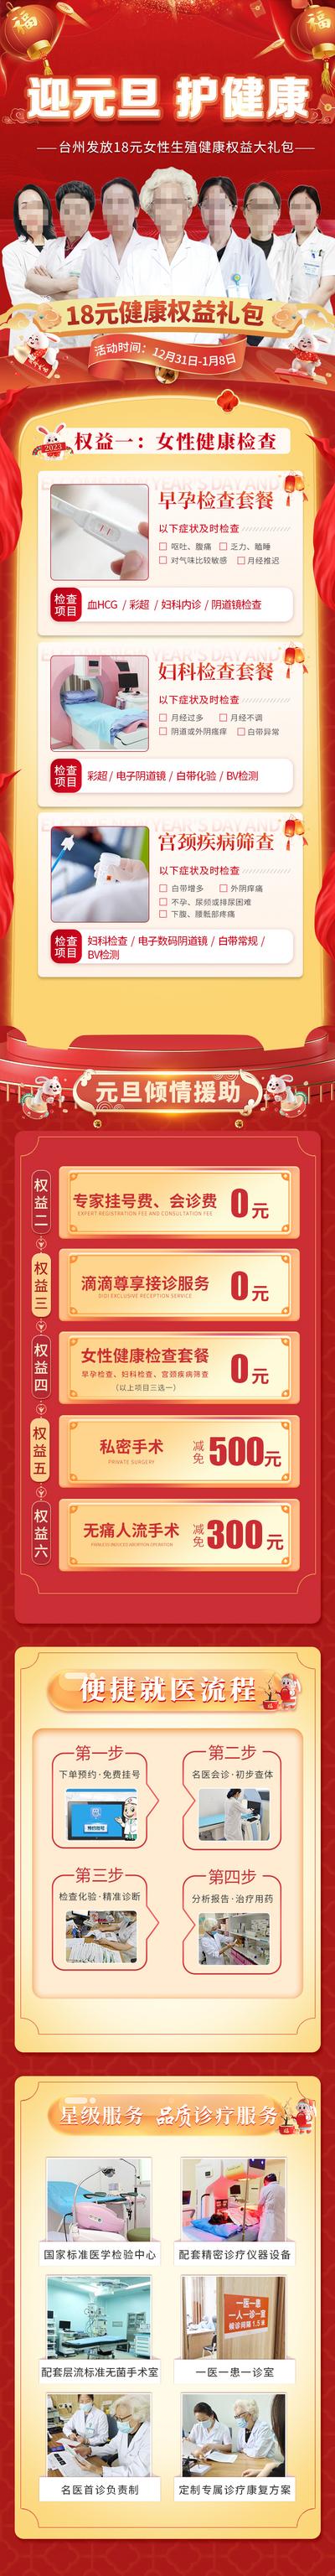 南门网 专题设计 长图 中国传统节日 元旦 活动 喜庆